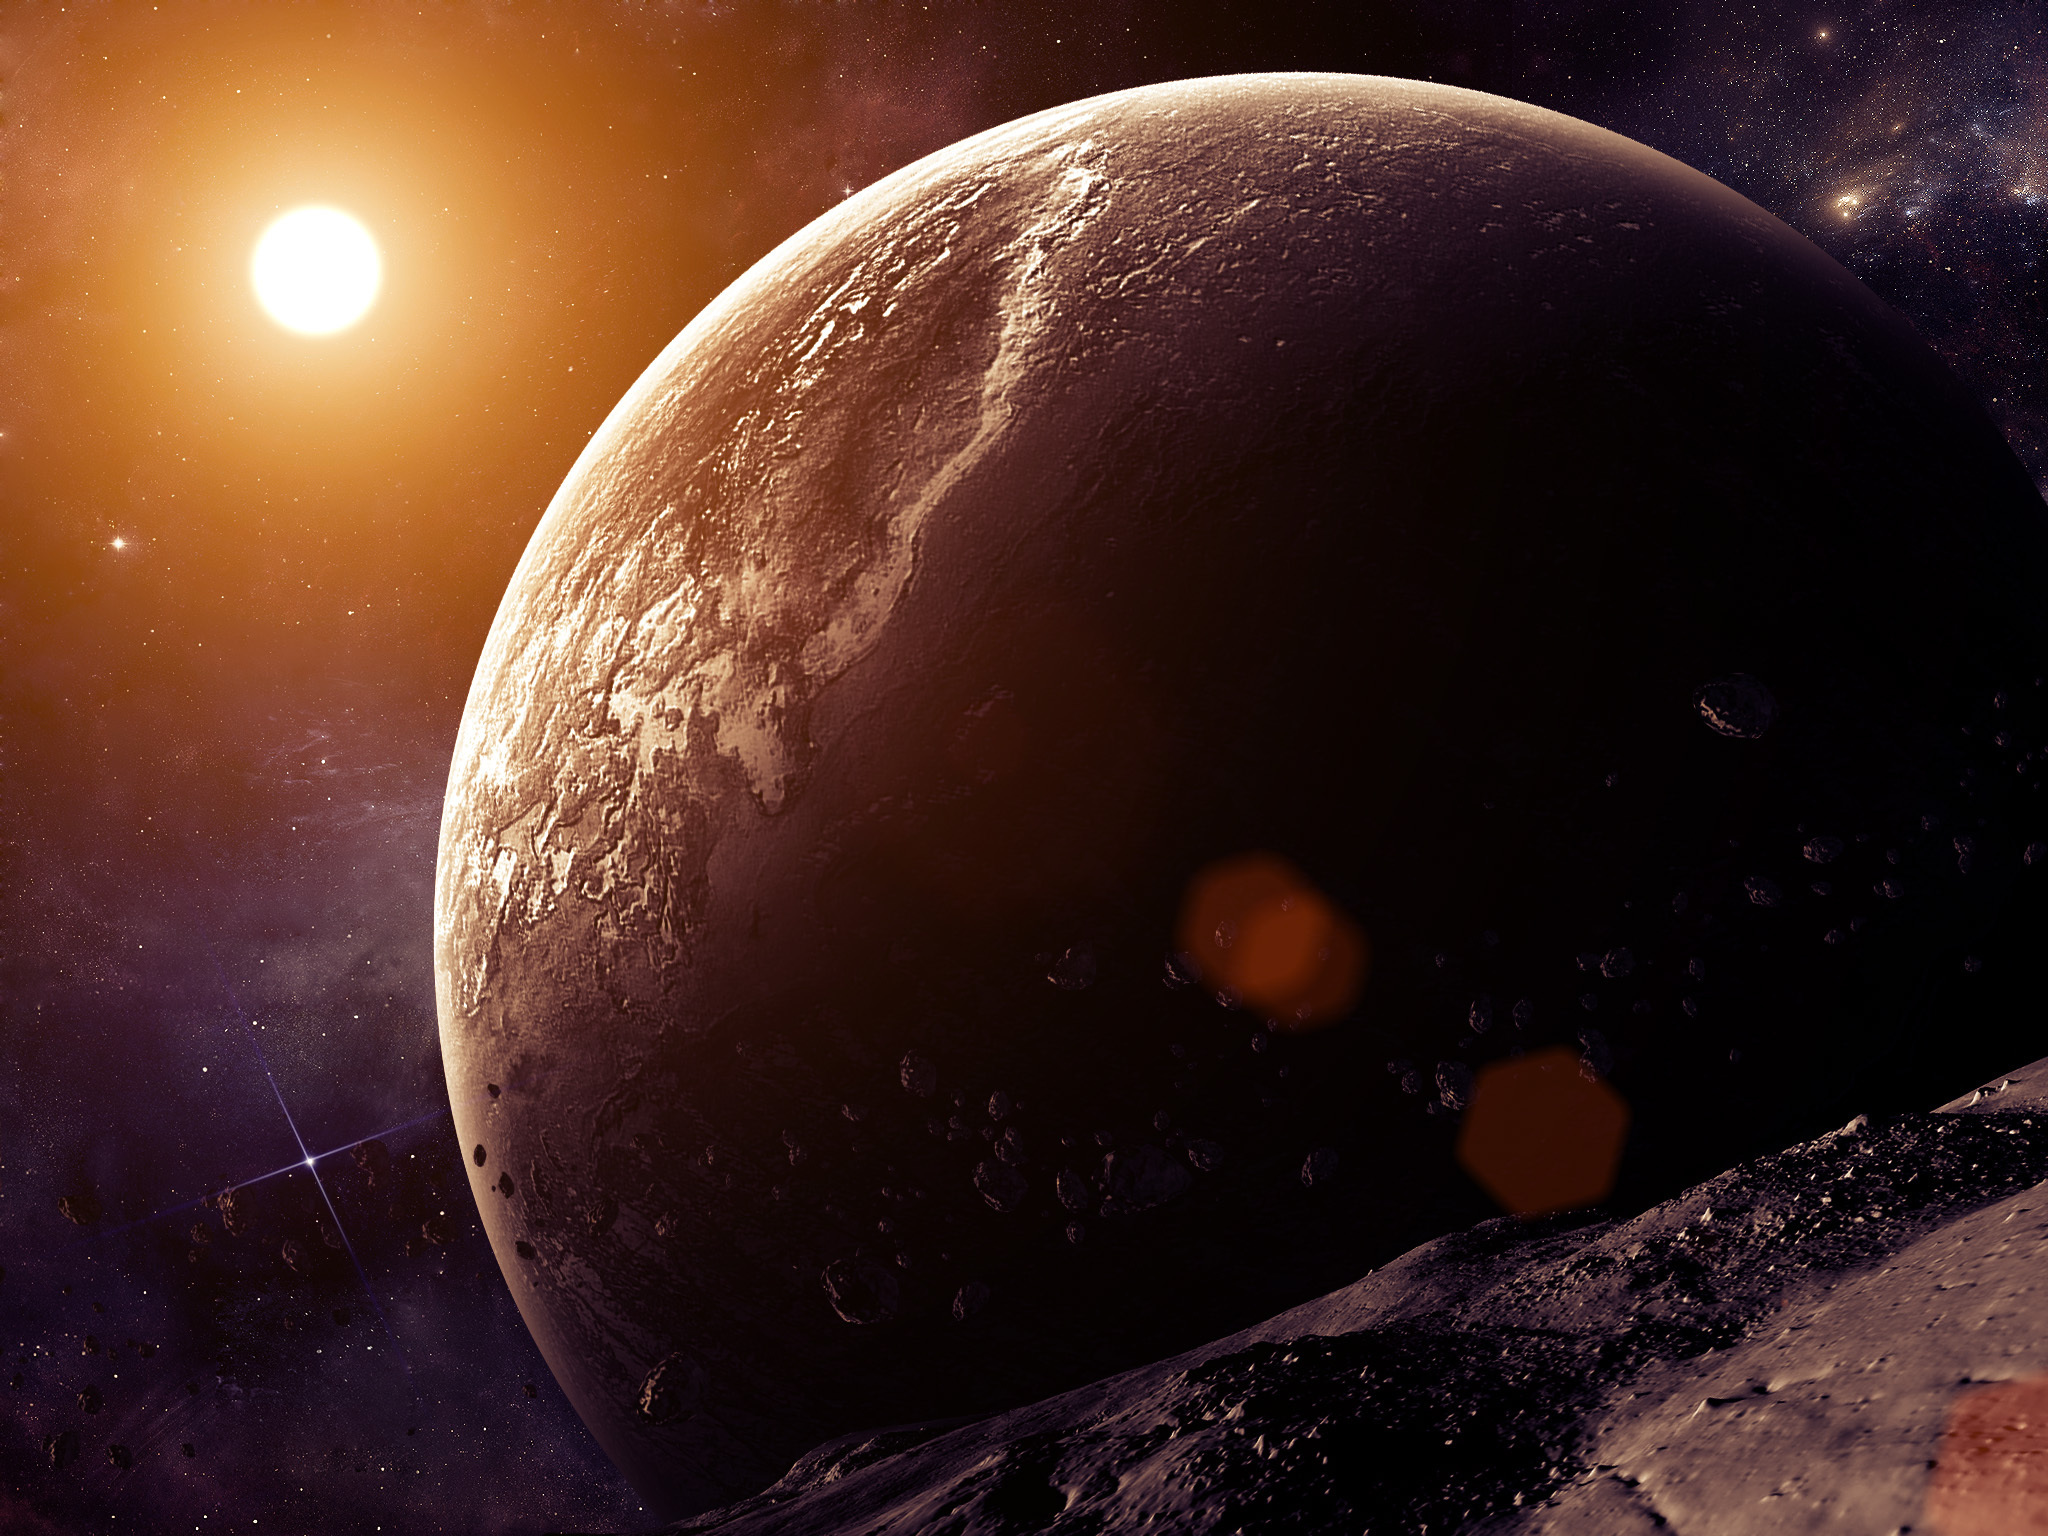 фото планет солнечной системы высокого разрешения